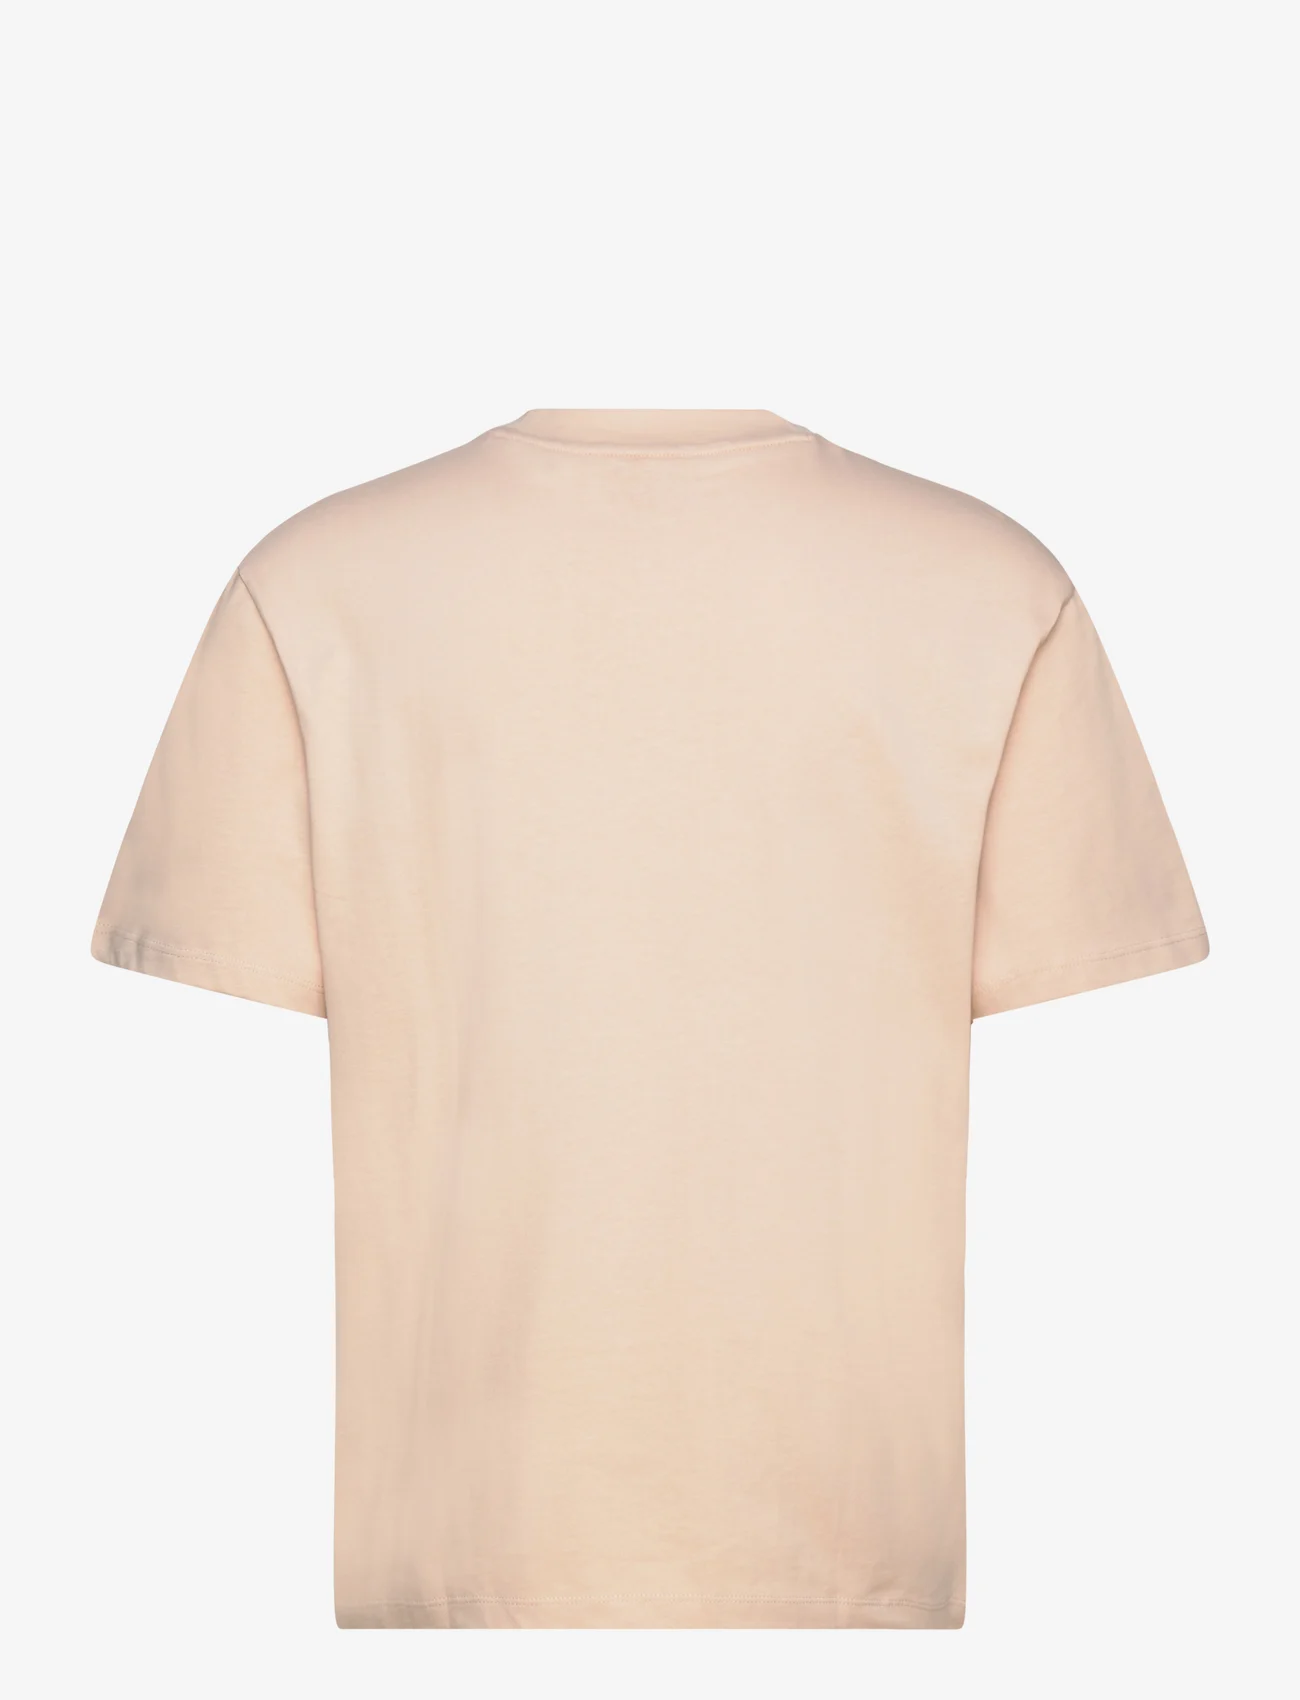 HUGO - Dapolino - basic t-shirts - light beige - 1